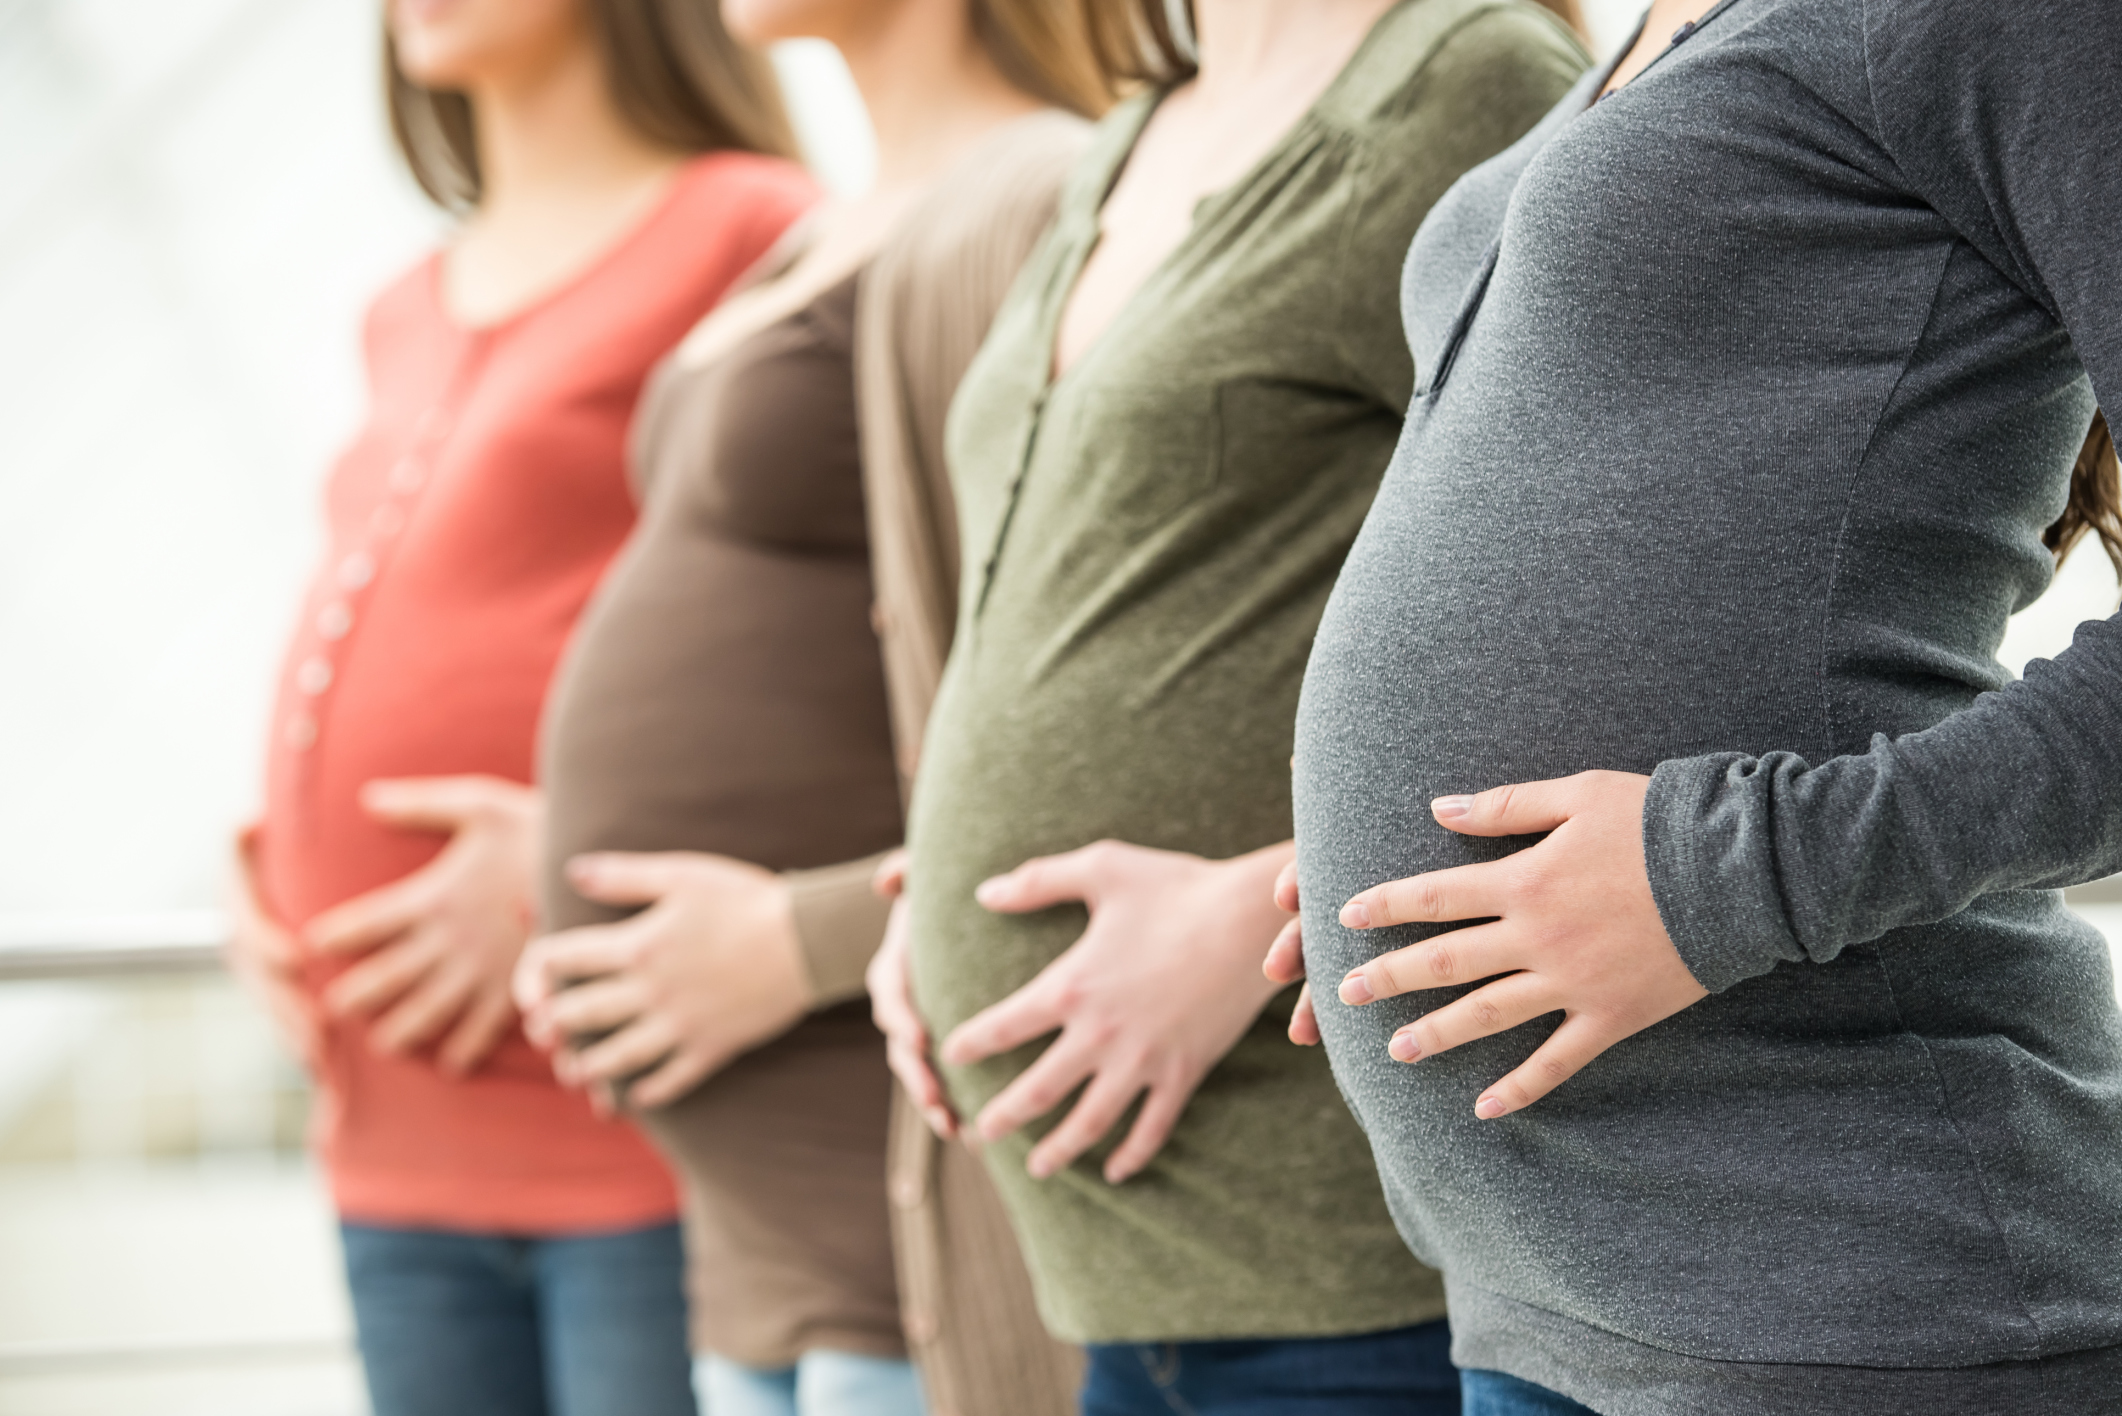 Crescimento alarmante de cesarianas: OMS alerta sobre riscos